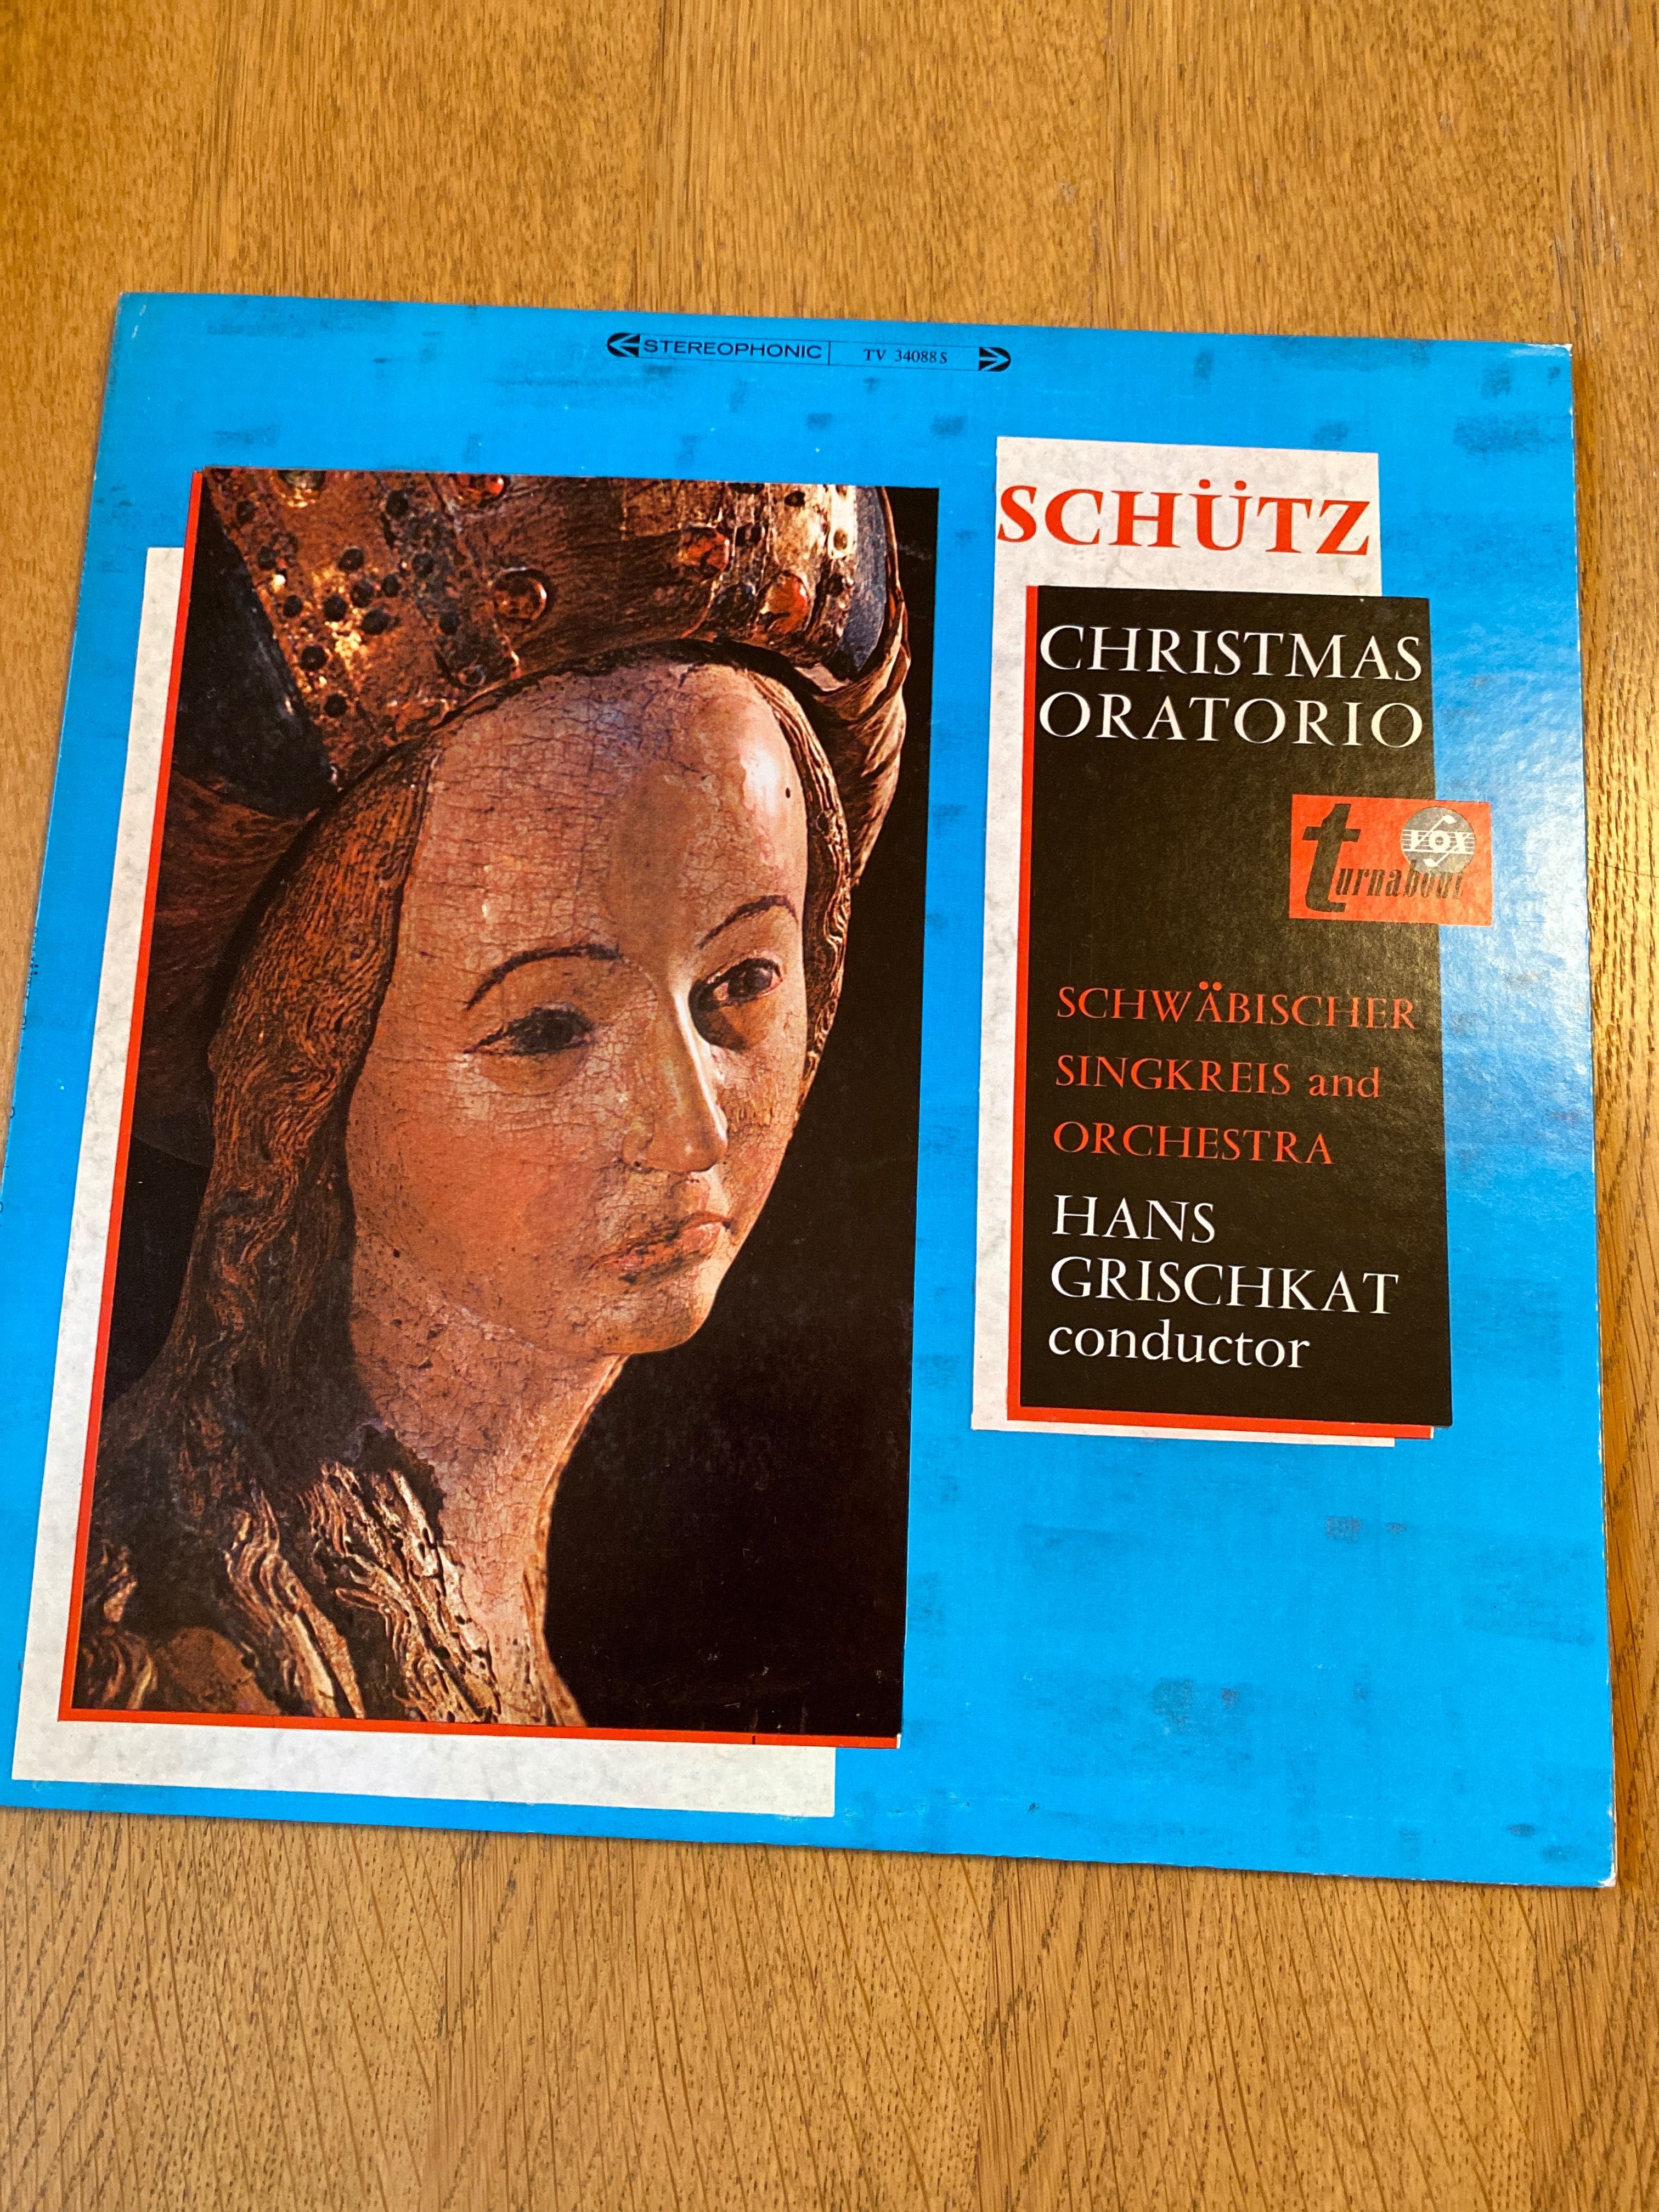 Schutz- Christmas Oratorio, vinil